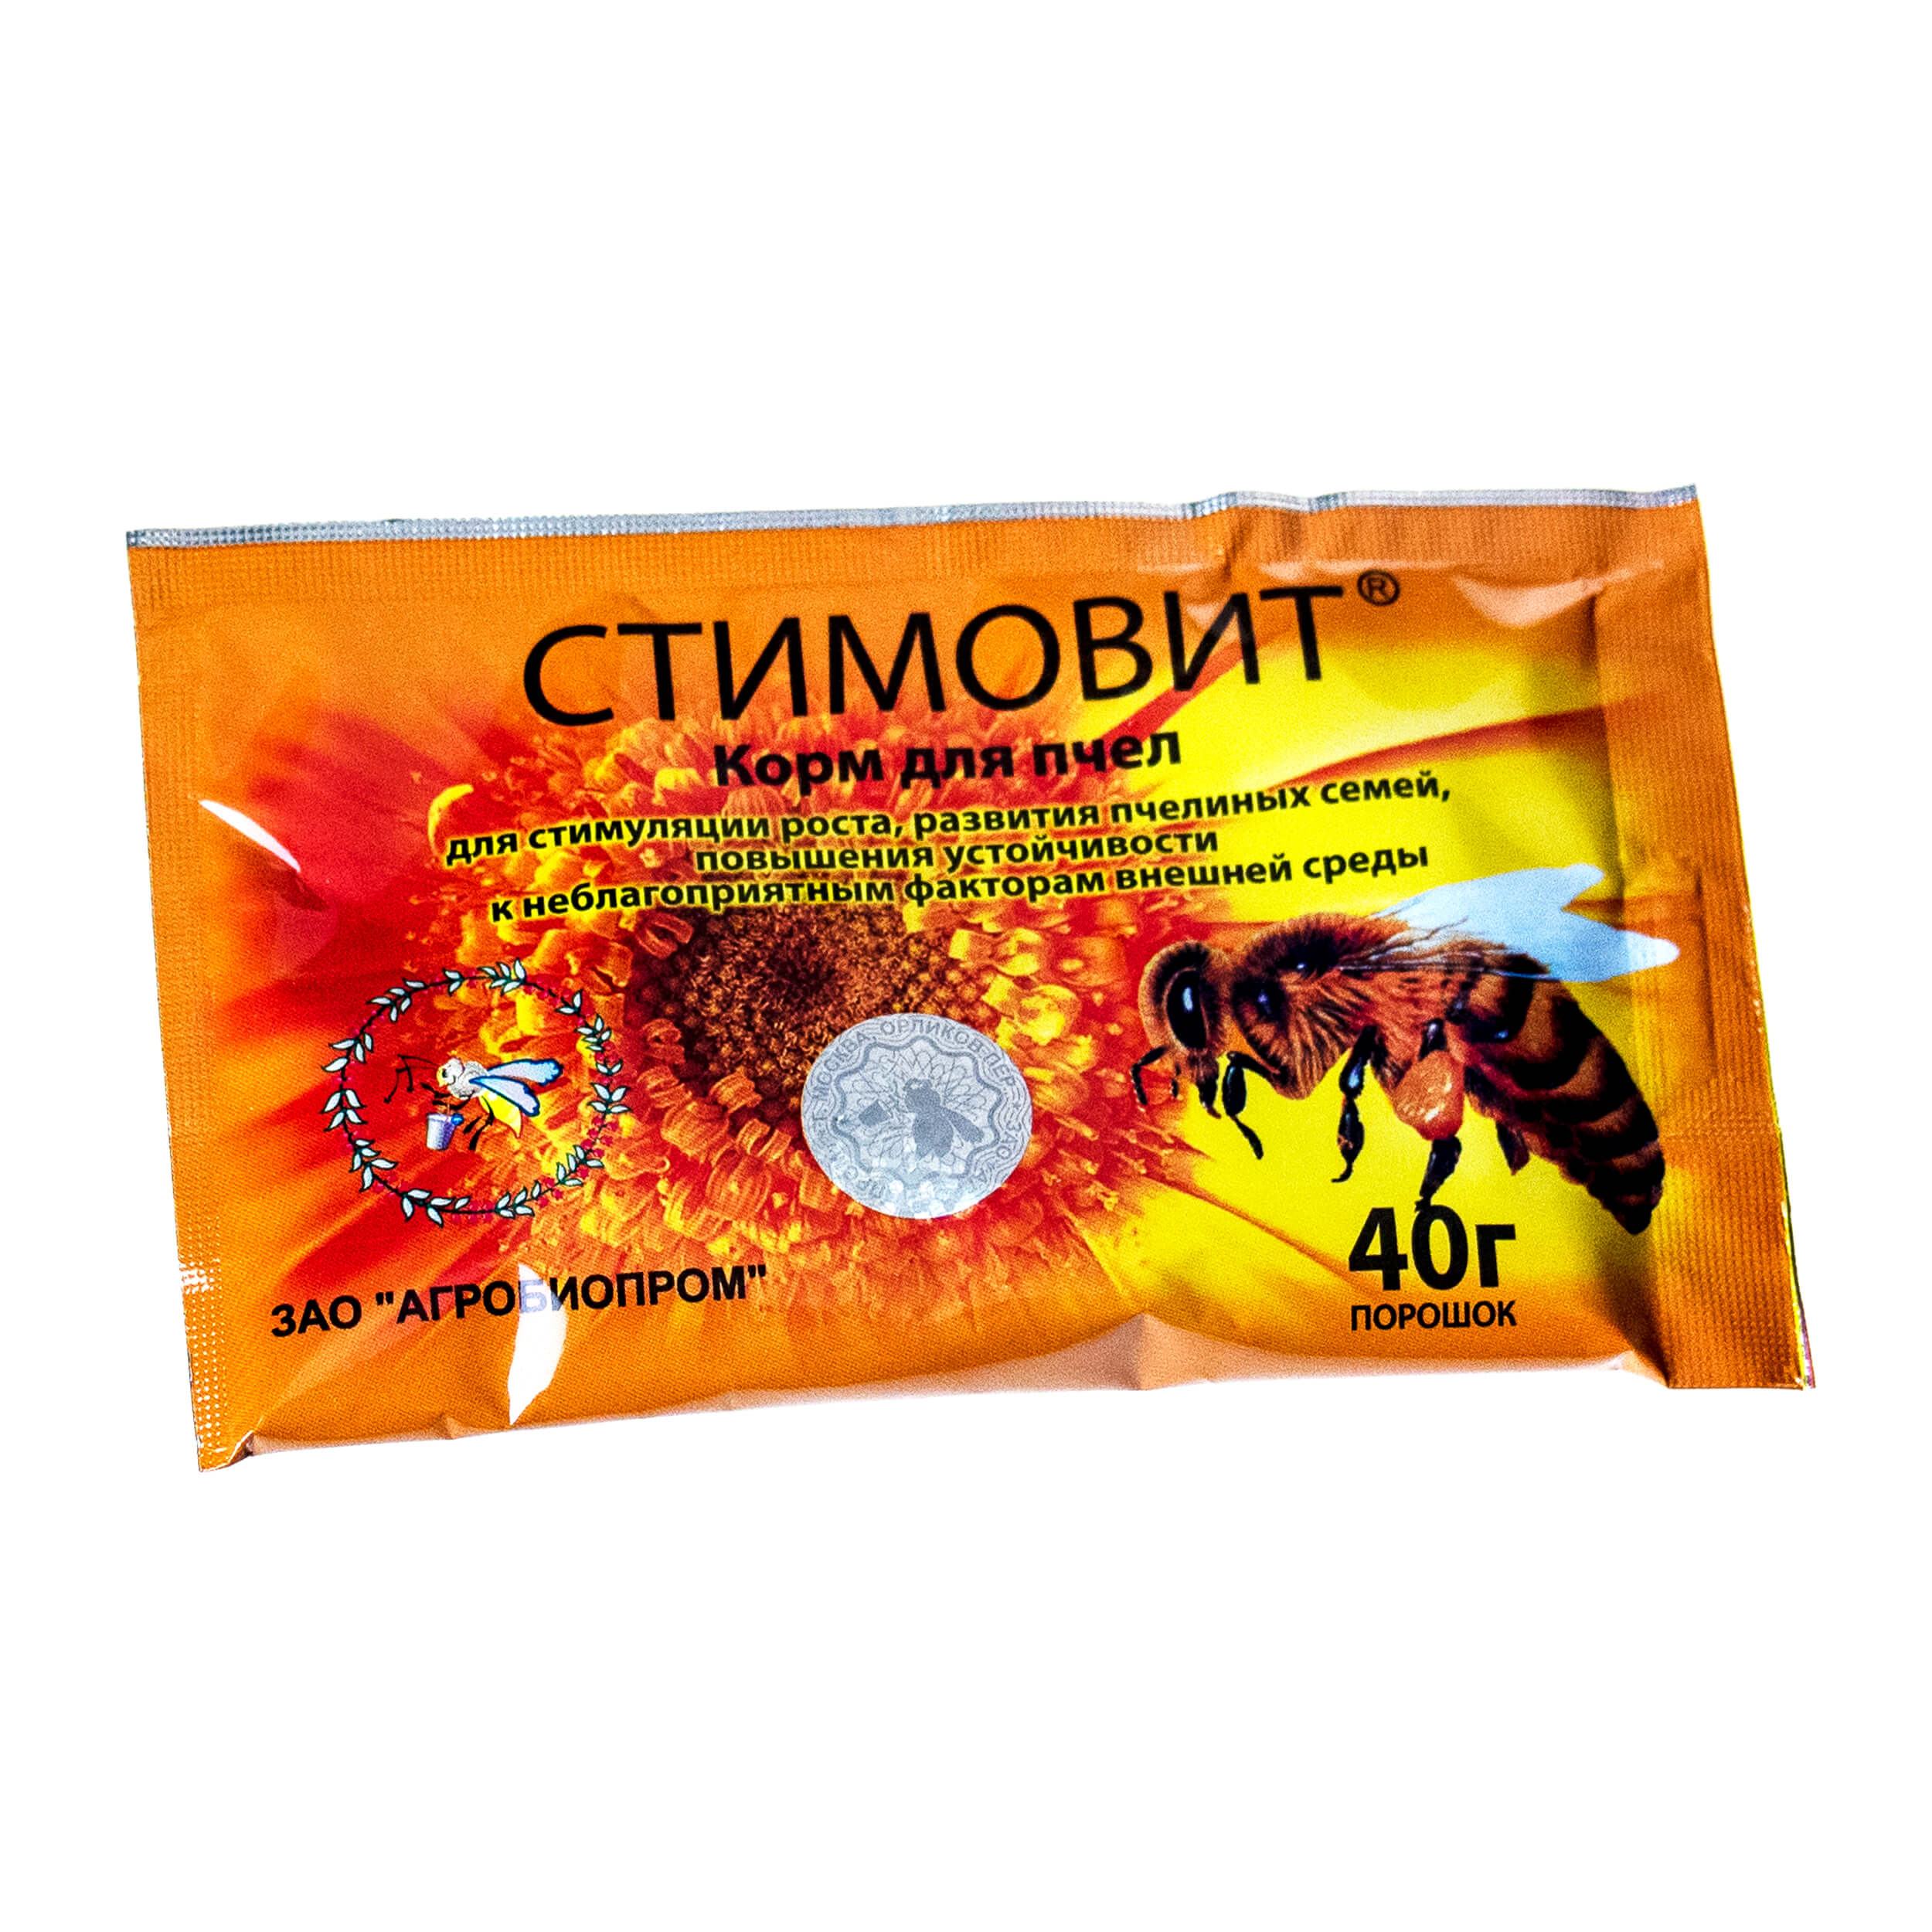 Стимовит (порошок - 40г), ООО "Агробиопром"